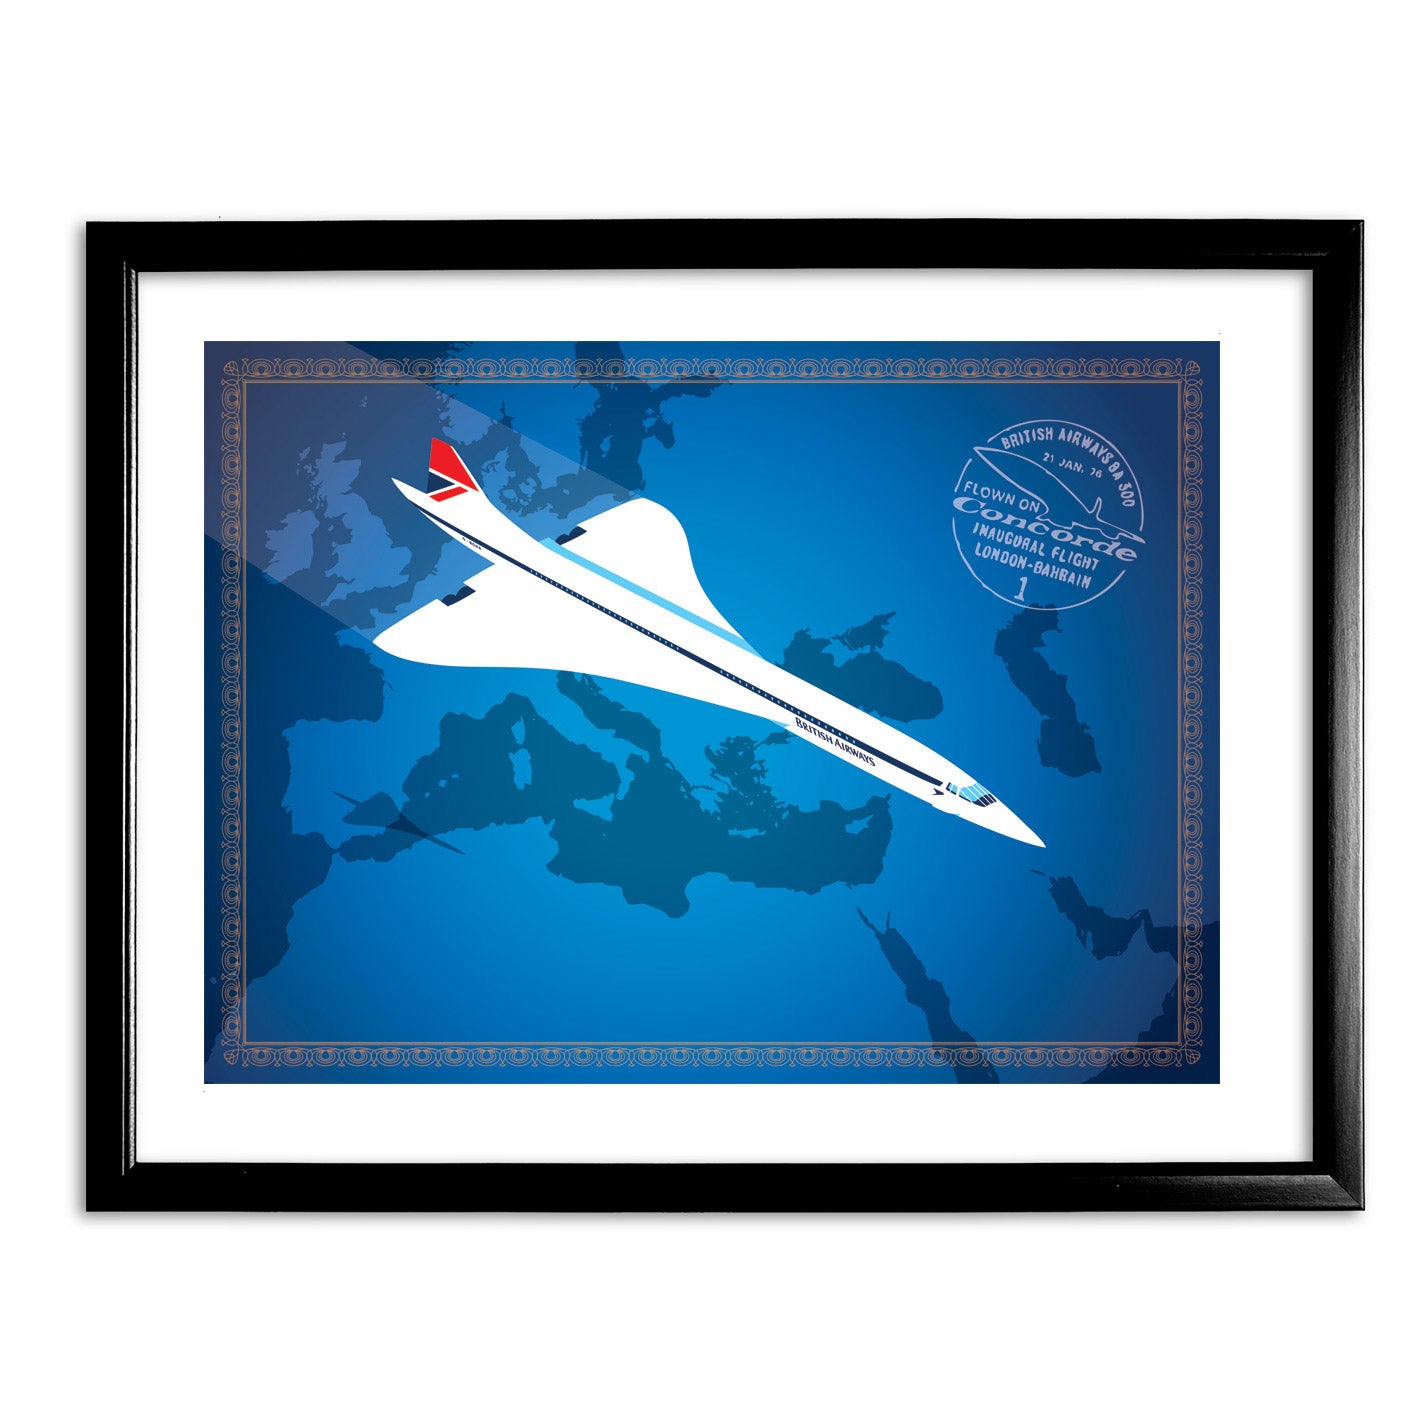 Concorde Art Print